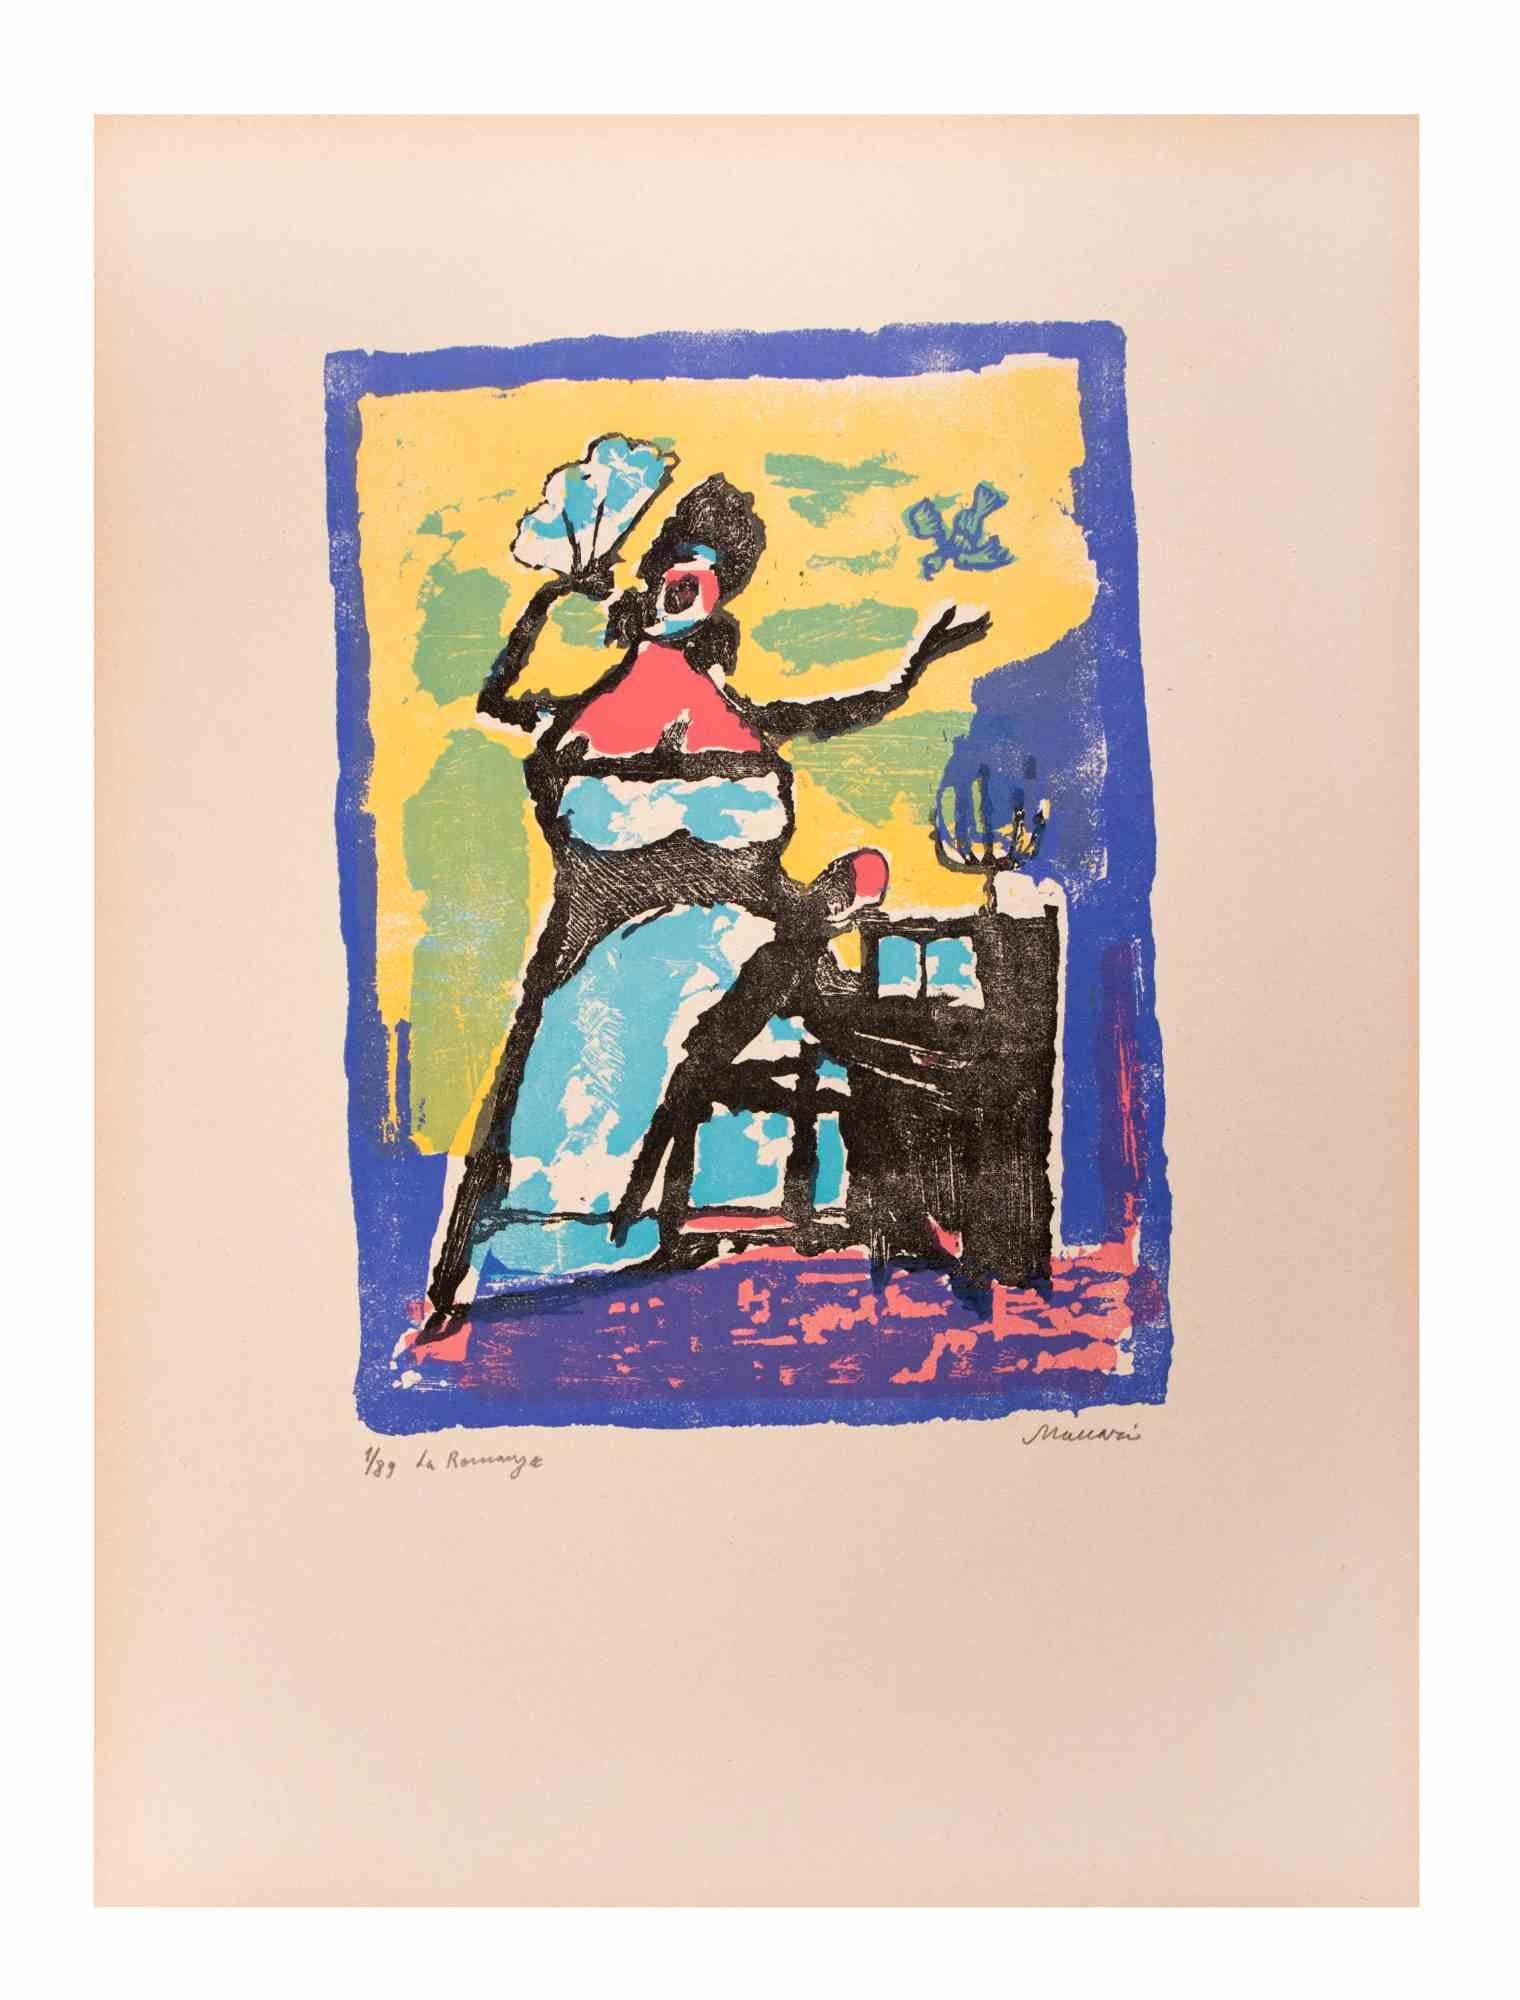 Die Romanze ist ein Kunstwerk von Mino Maccari (1924-1989) aus der Mitte des 20. Jahrhunderts.

Farbiger Holzschnitt auf Papier. Unten handsigniert, nummeriert 1/89 Exemplare und am linken Rand betitelt.

Gute Bedingungen.

Mino Maccari (Siena,